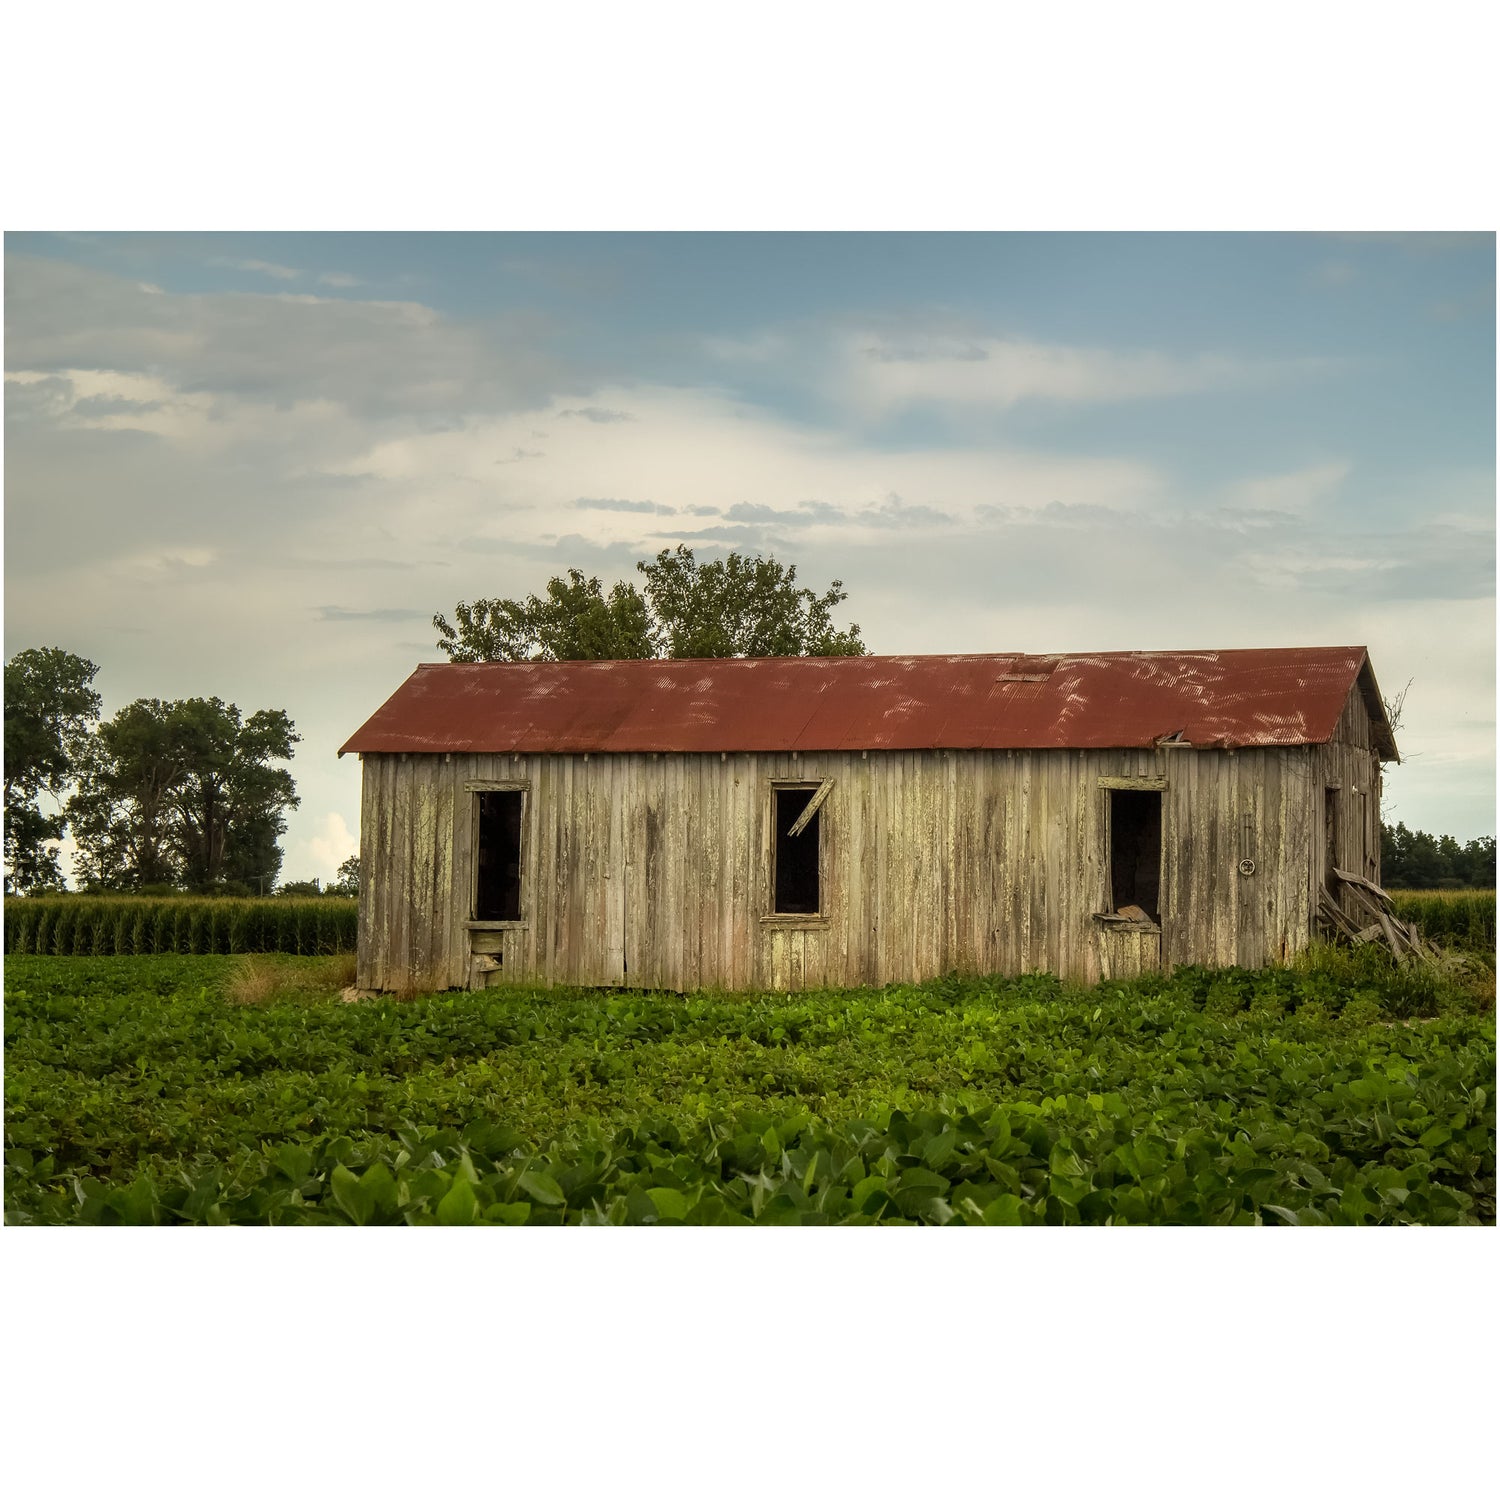 mississippi sharecropper shack on a plantation